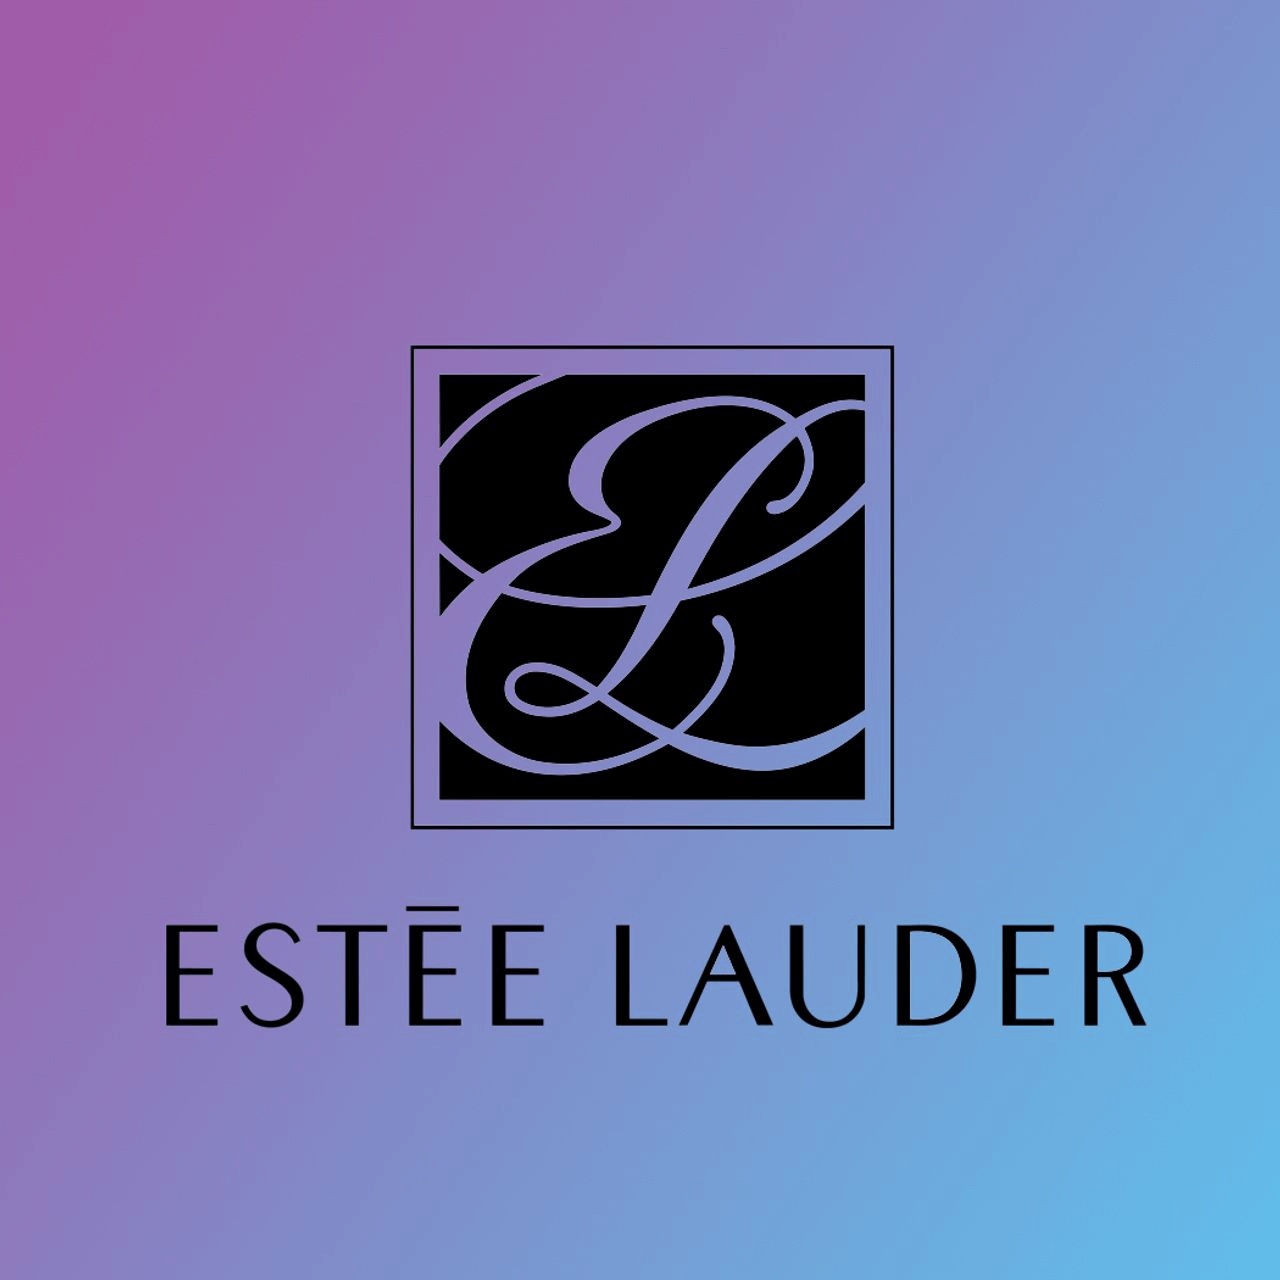 Estee Lauder monogram logo 